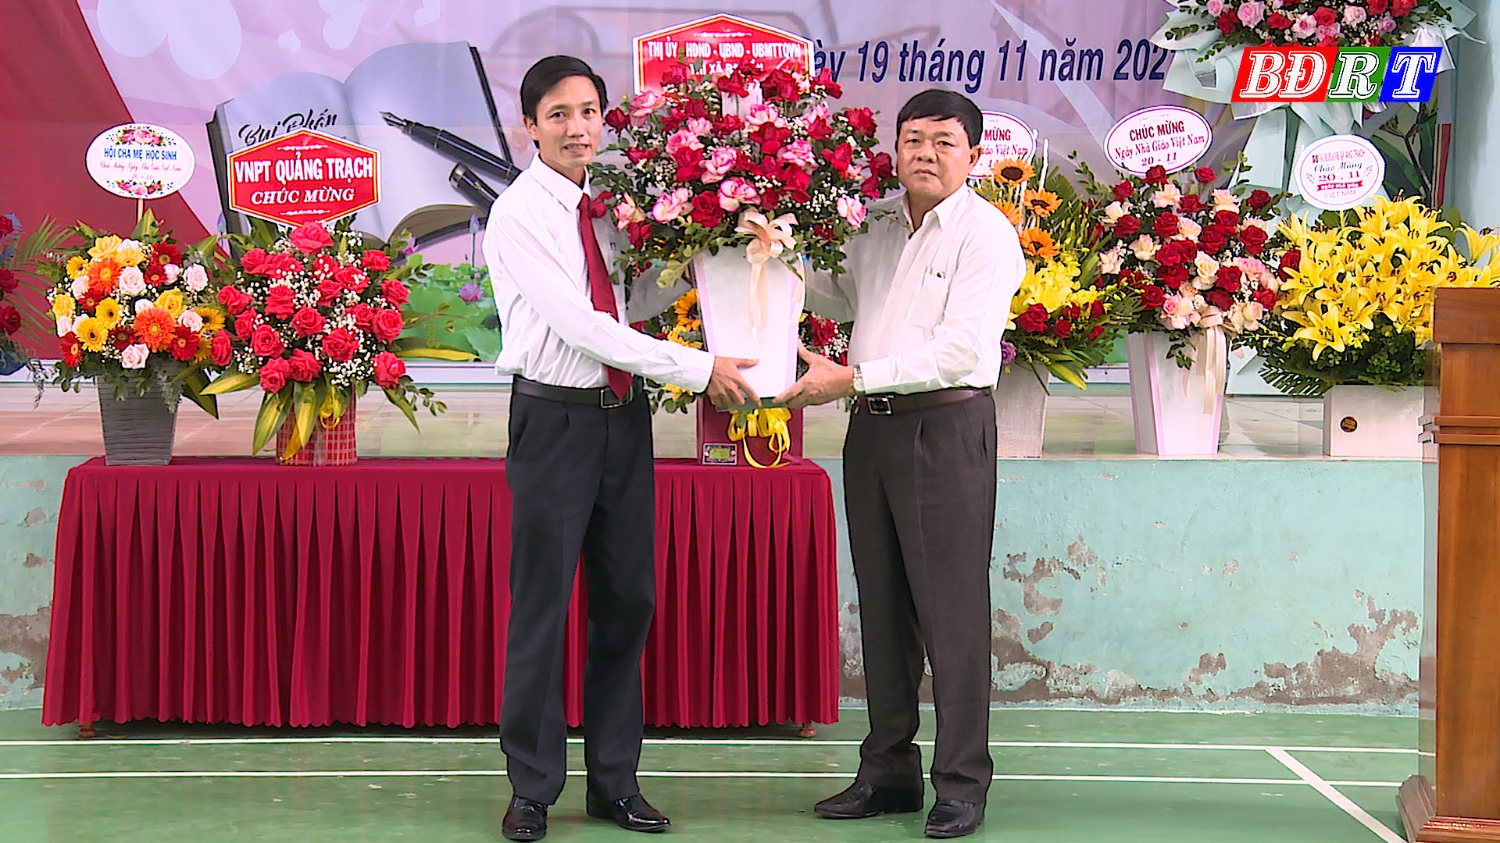 Đồng chí Chủ tịch UBND thị xã Ba Đồn tặng hoa chúc mừng trường THPT Lê Hồng Phong